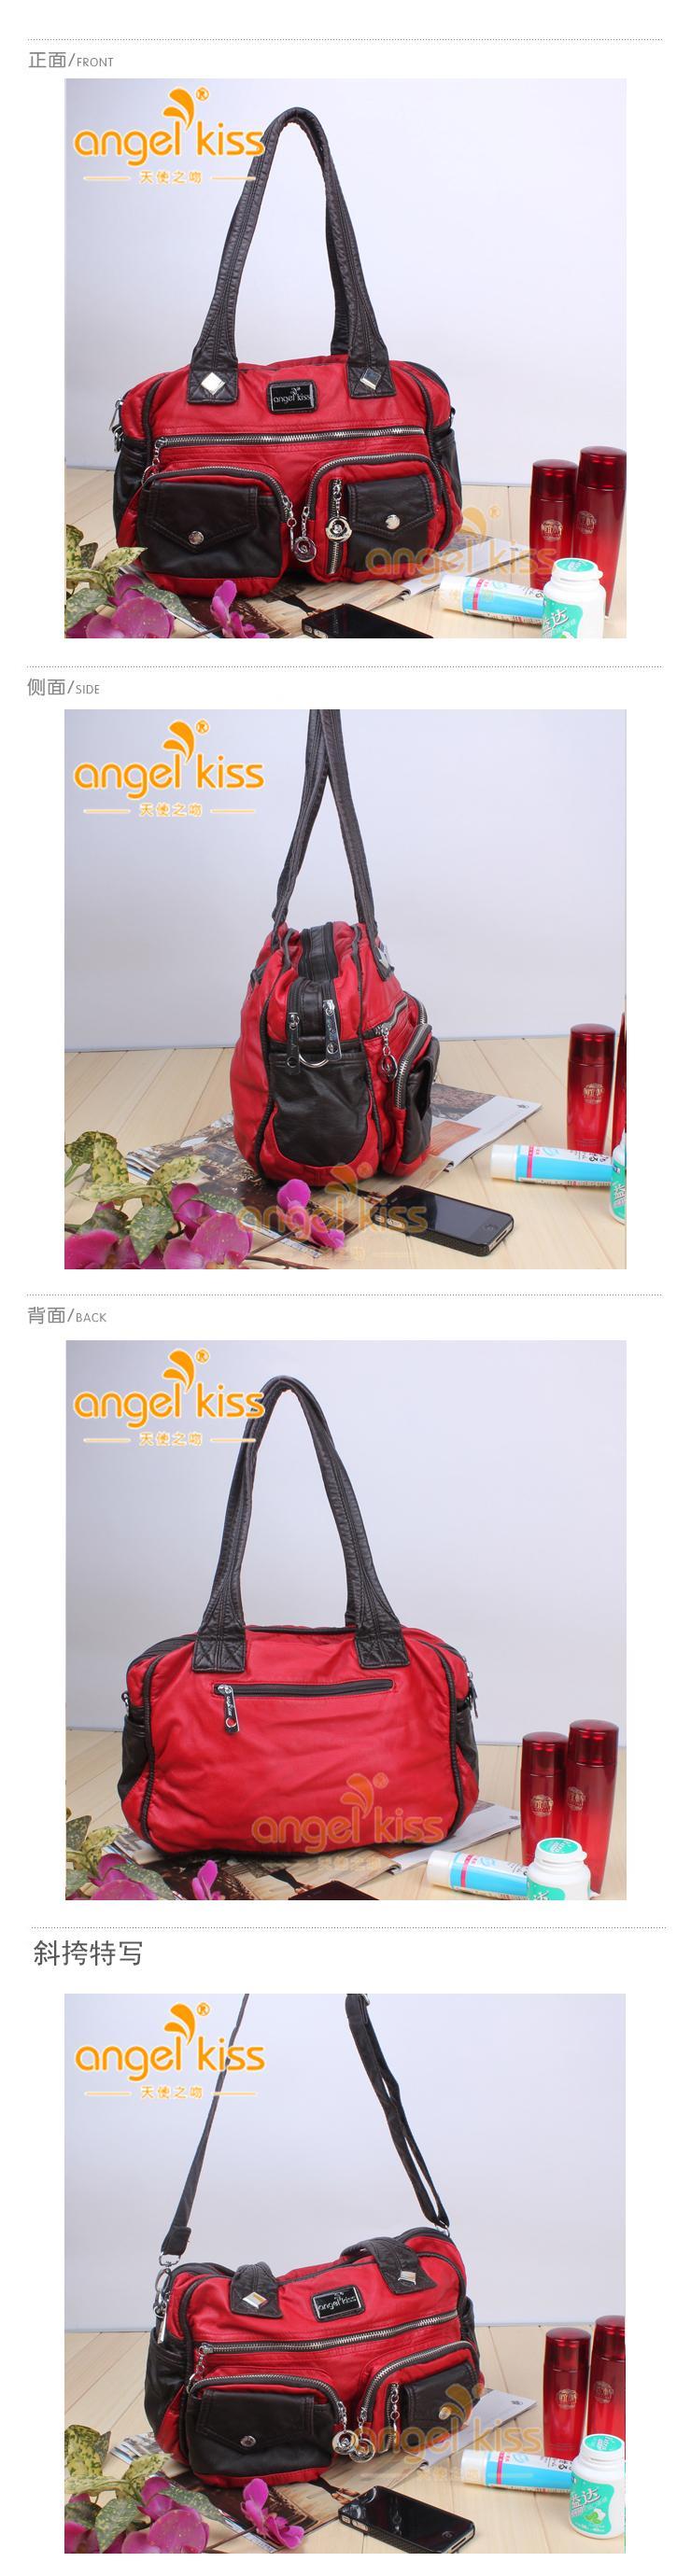 红色韩版单肩斜挎包 时尚包包 2013新款女包 洗水包 